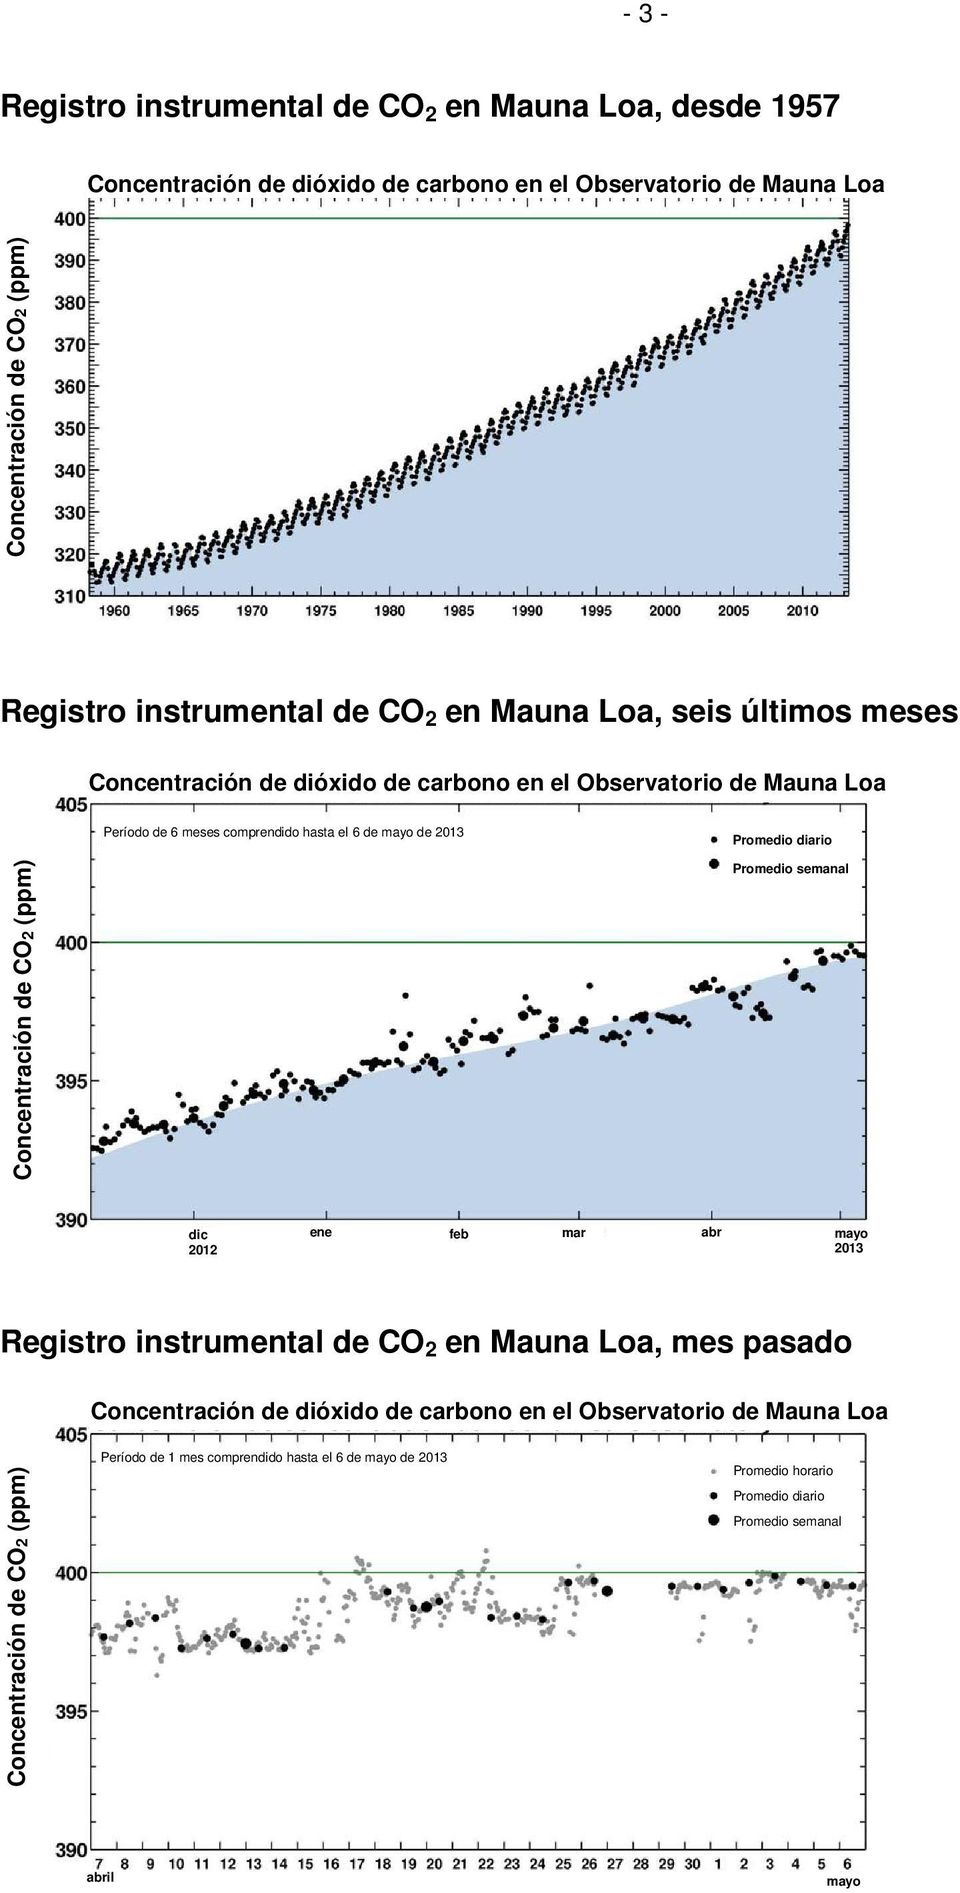 semanal dic ene feb mar abr mayo Dic Registro instrumental de CO 2 en Mauna Loa, mes pasado